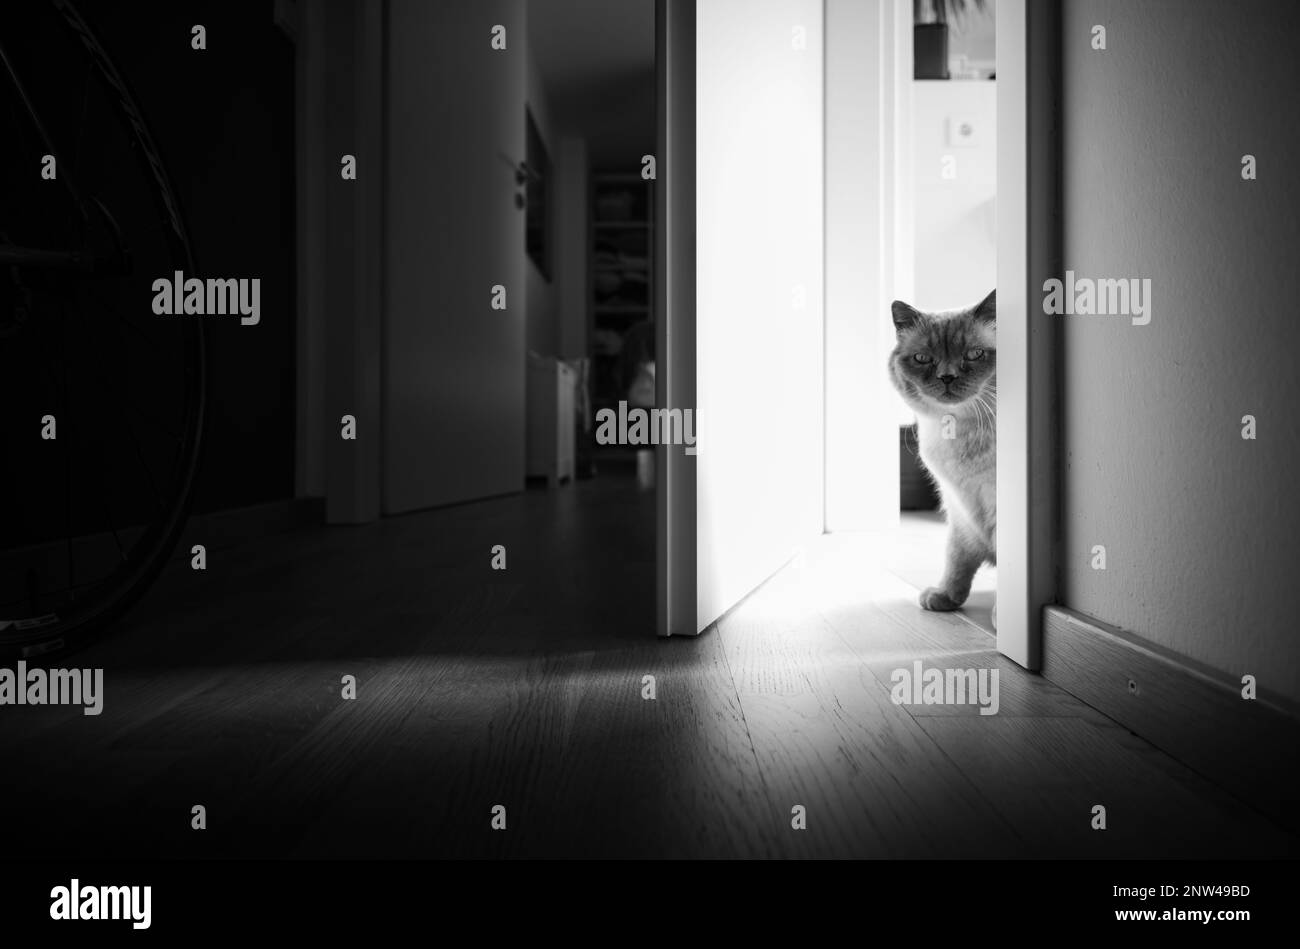 Britisch Kurzhaar Katze in häuslicher Umgebung. Stock Photo